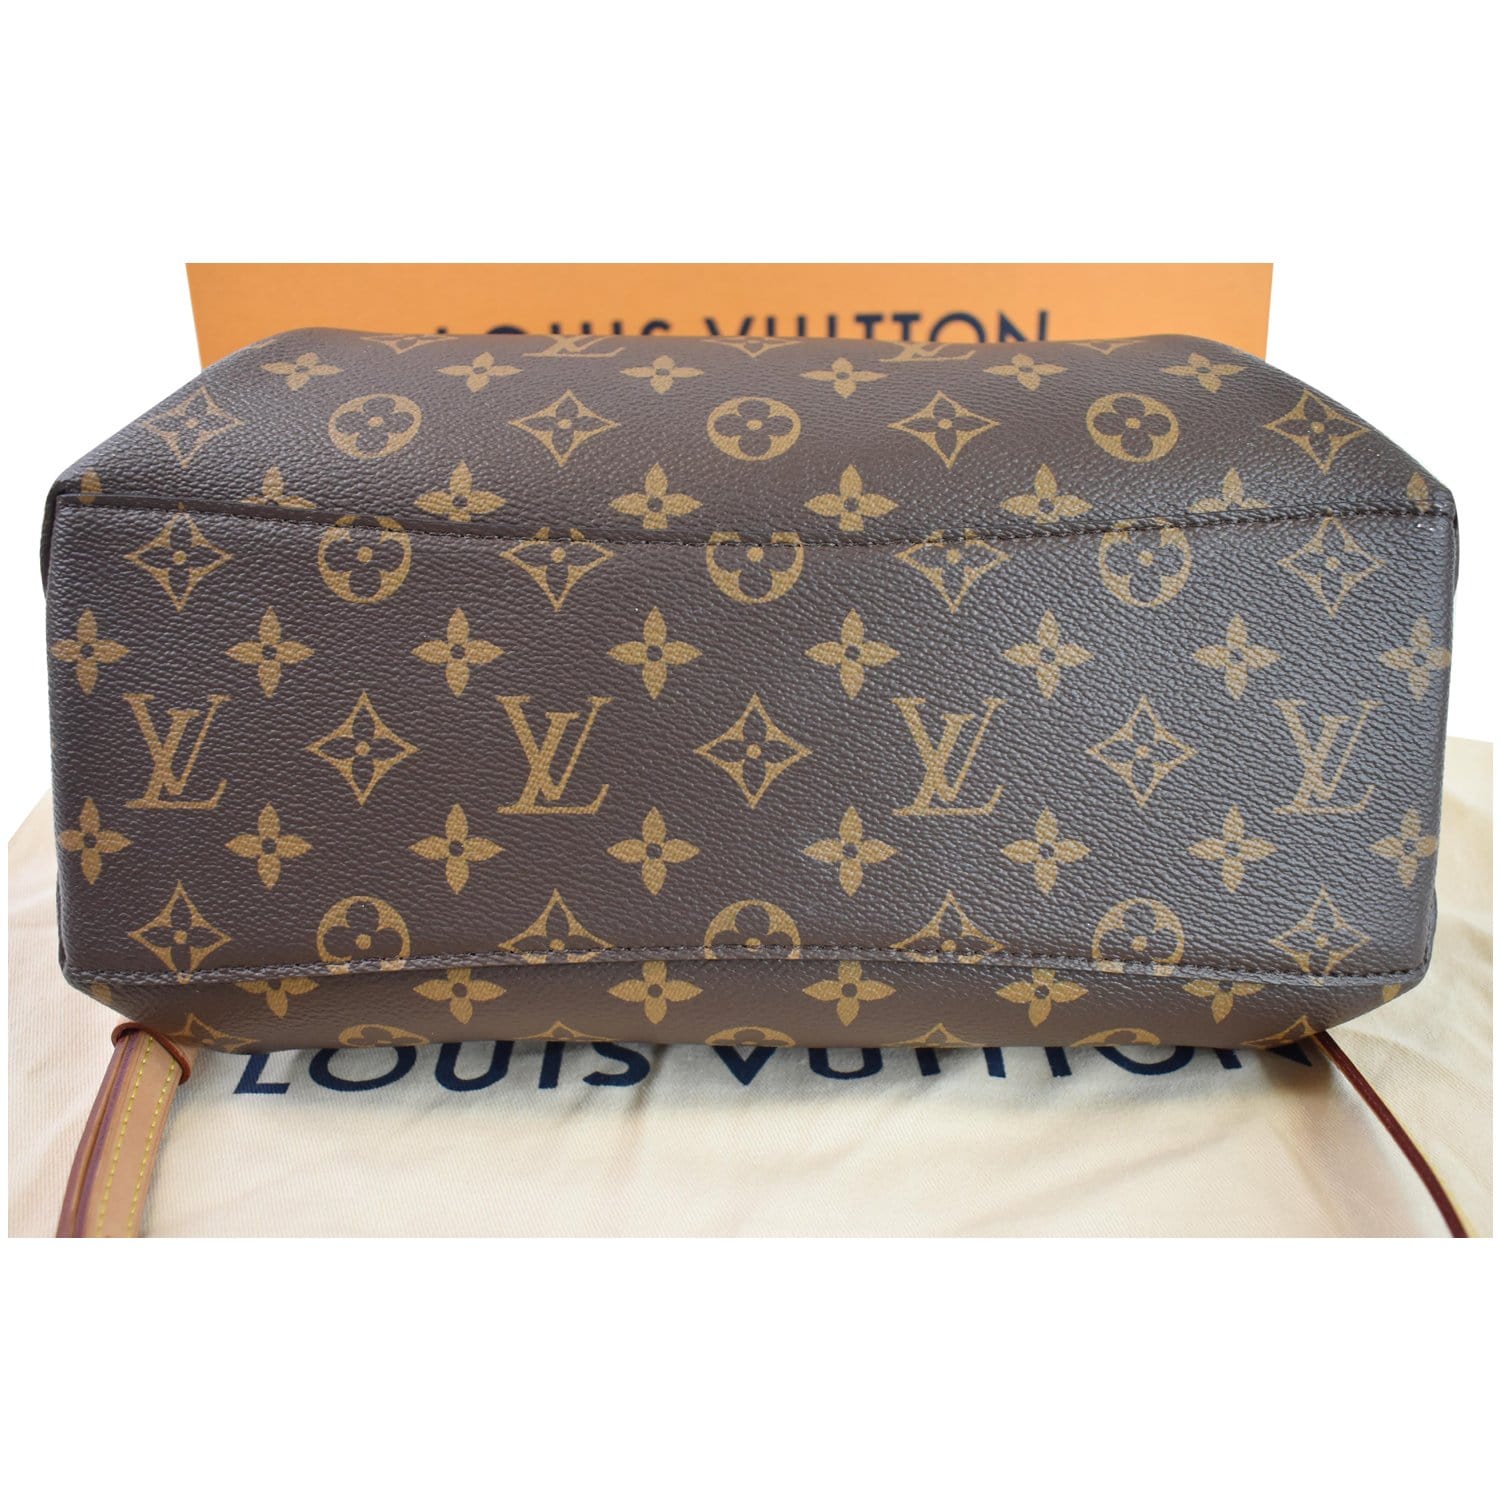 Mint Auth Louis Vuitton M53380 Monogram Rivoli Business Bags